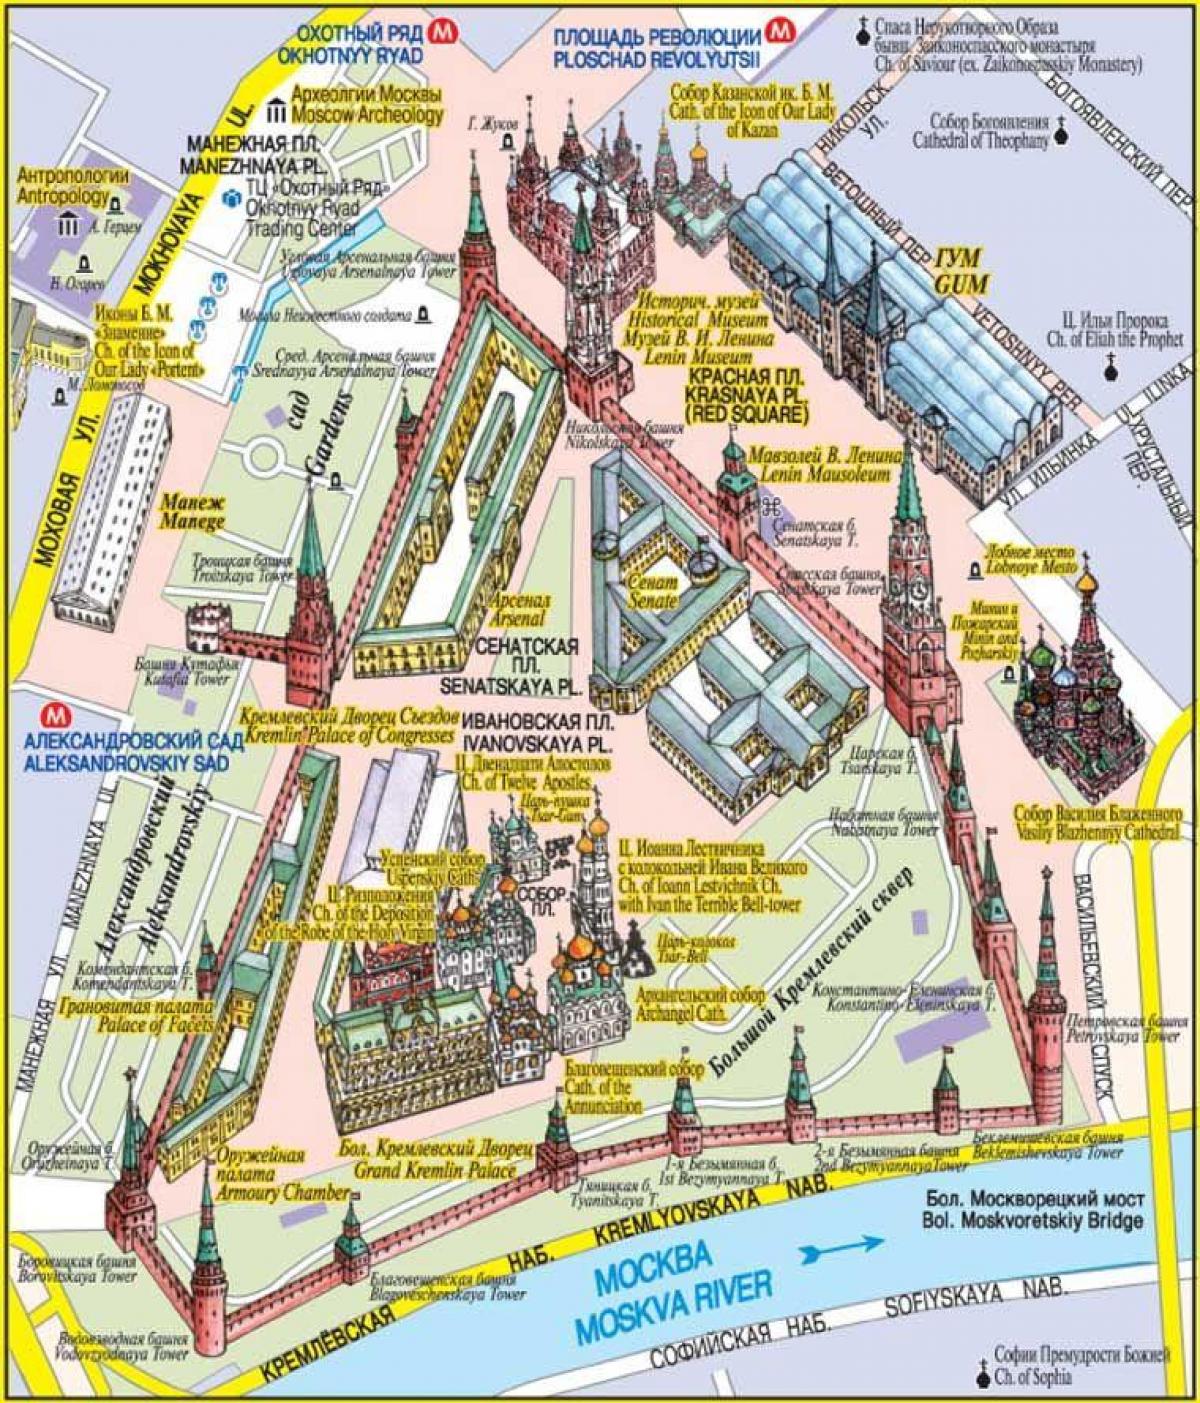 Praza vermella de Moscova mapa